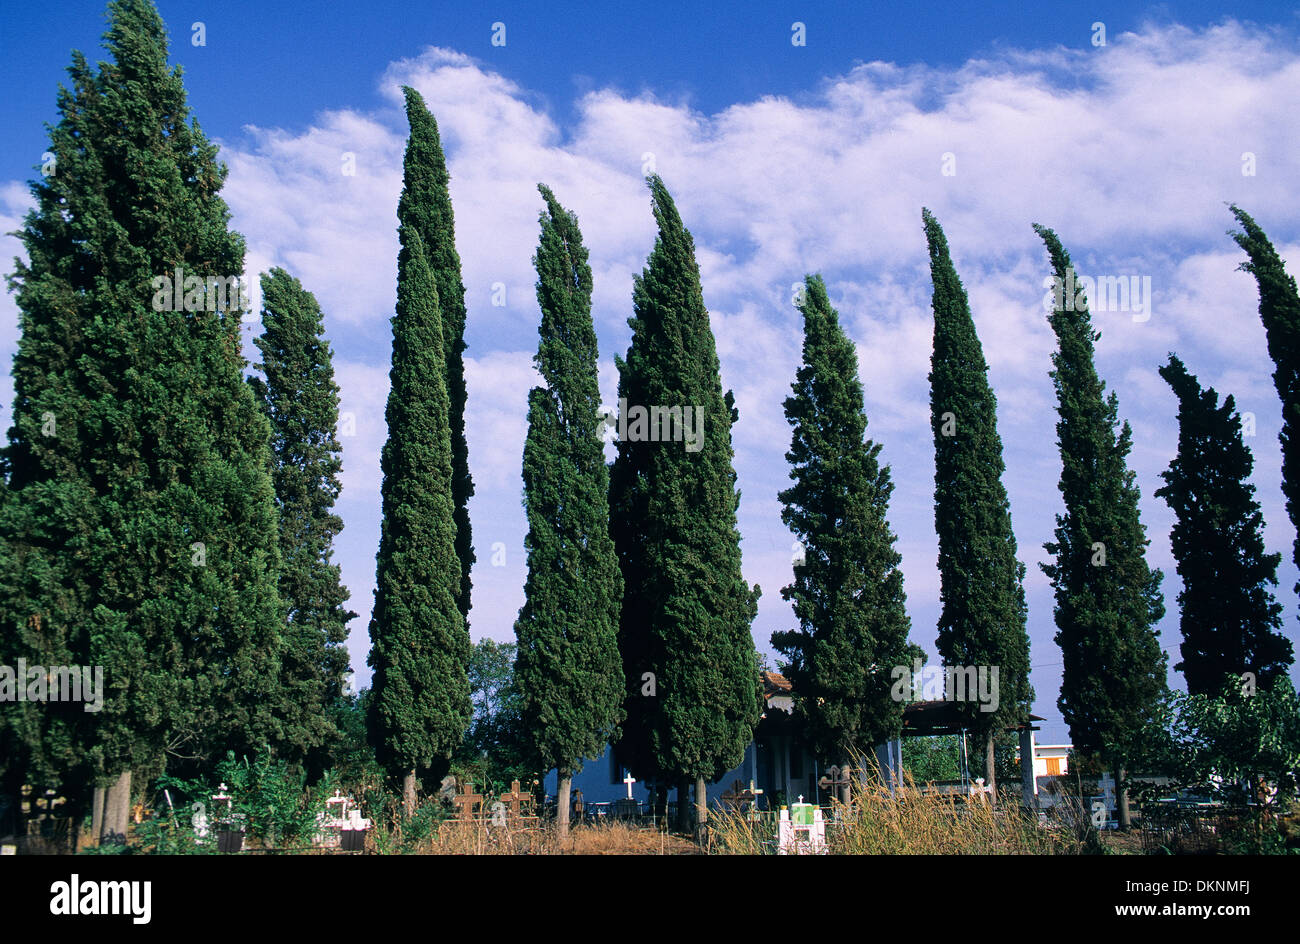 Mediterranean Cypress, Italian Cypress, Tuscan Cypress, Graveyard Cypress, Pencil Pine, Echte Zypresse, Cupressus sempervirens Stock Photo